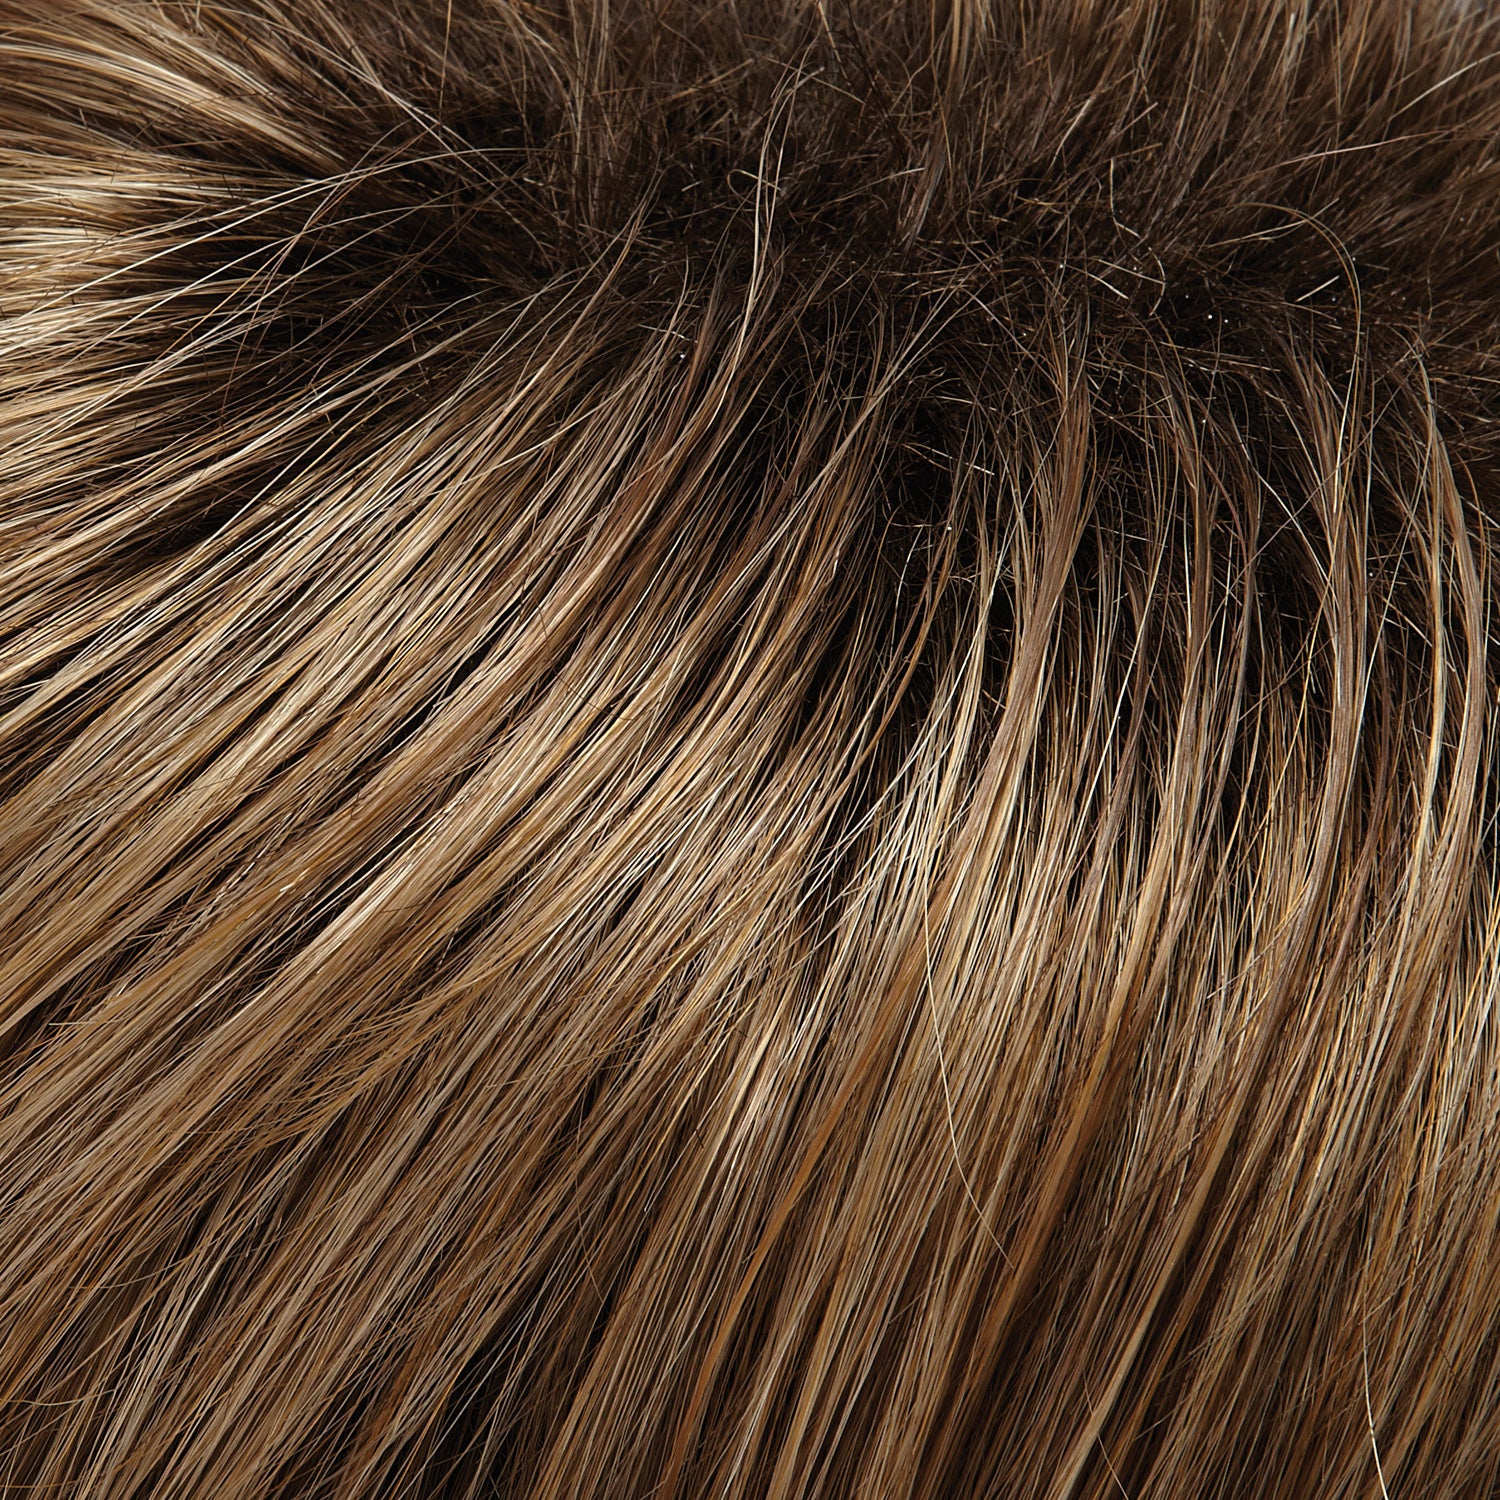 Perruque Cheveux Synthetiques Avec Mèches Jon Renau Kristen Couleur 1026tts4